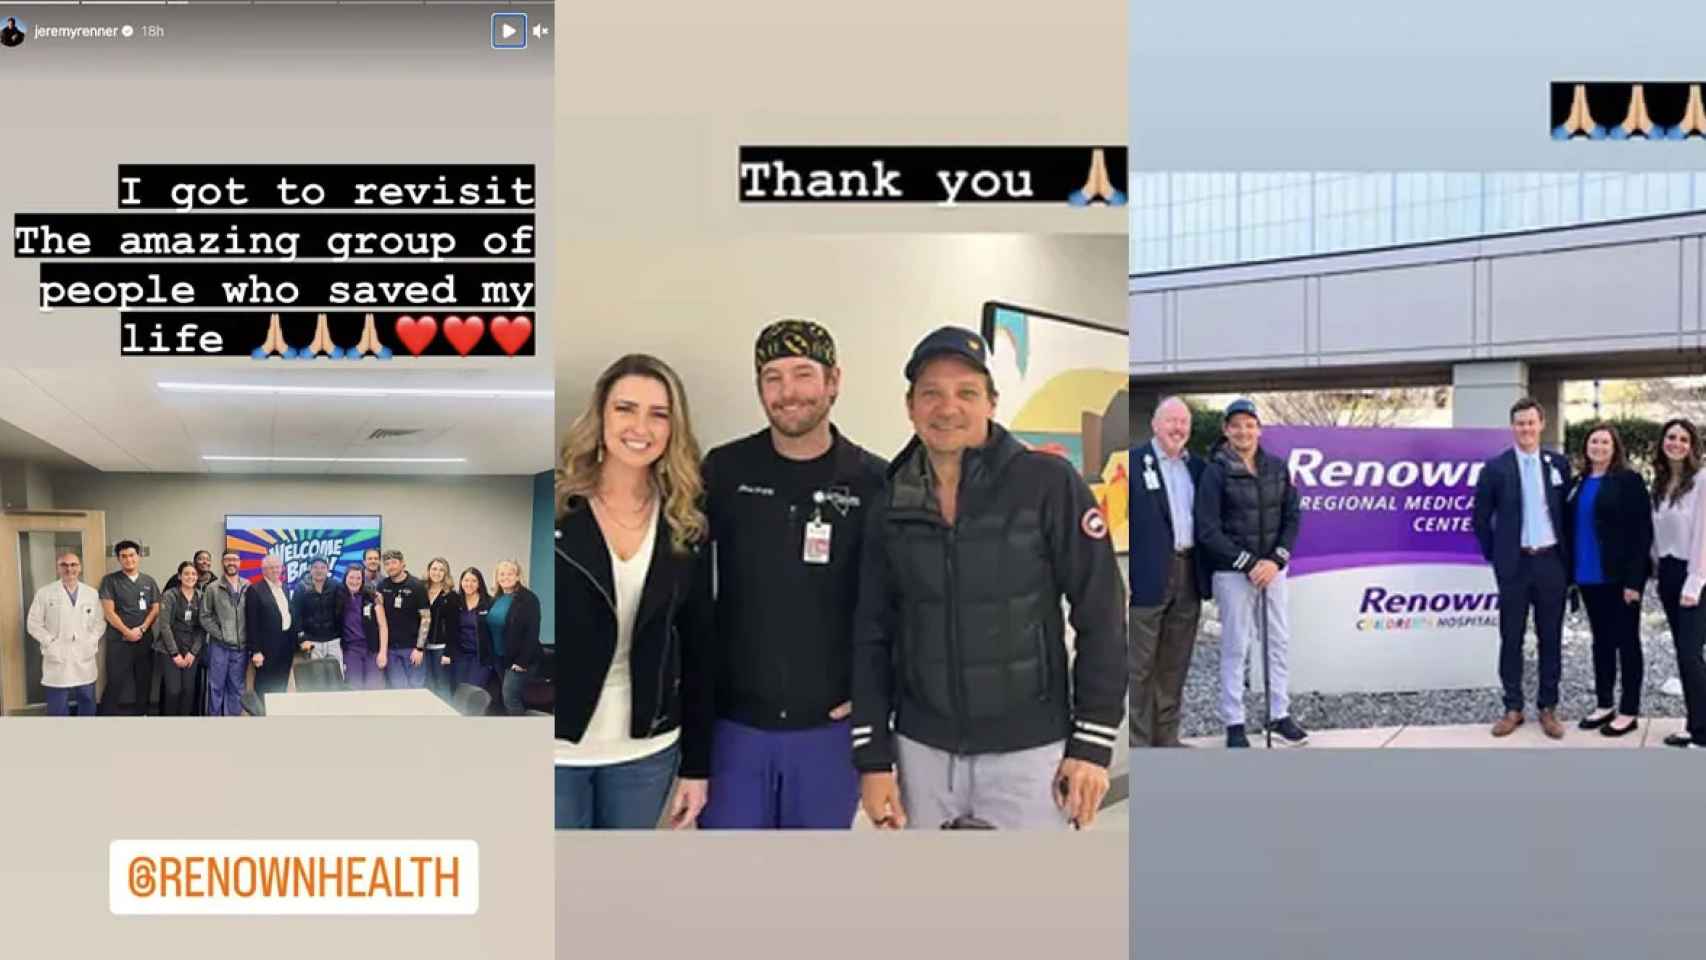 Historias de Instagram de Jeremy Renner sobre su visita al hospital.